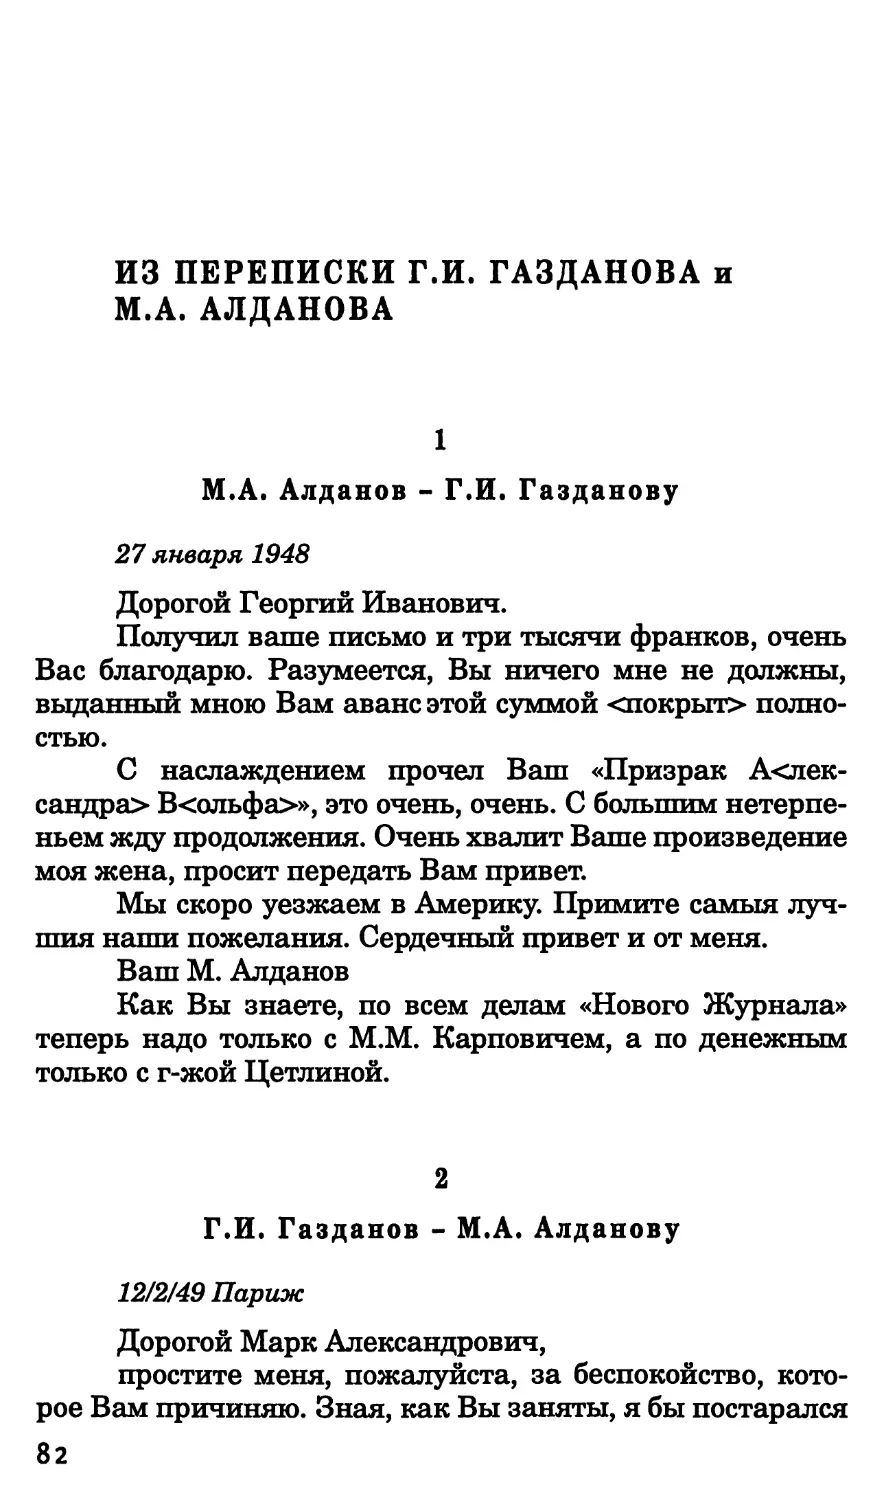 Из переписки Г.И. Газданова и М.А. Алданова
2. Г.И. Газданов – М.А. Алданову. 12 февраля 1949 г.